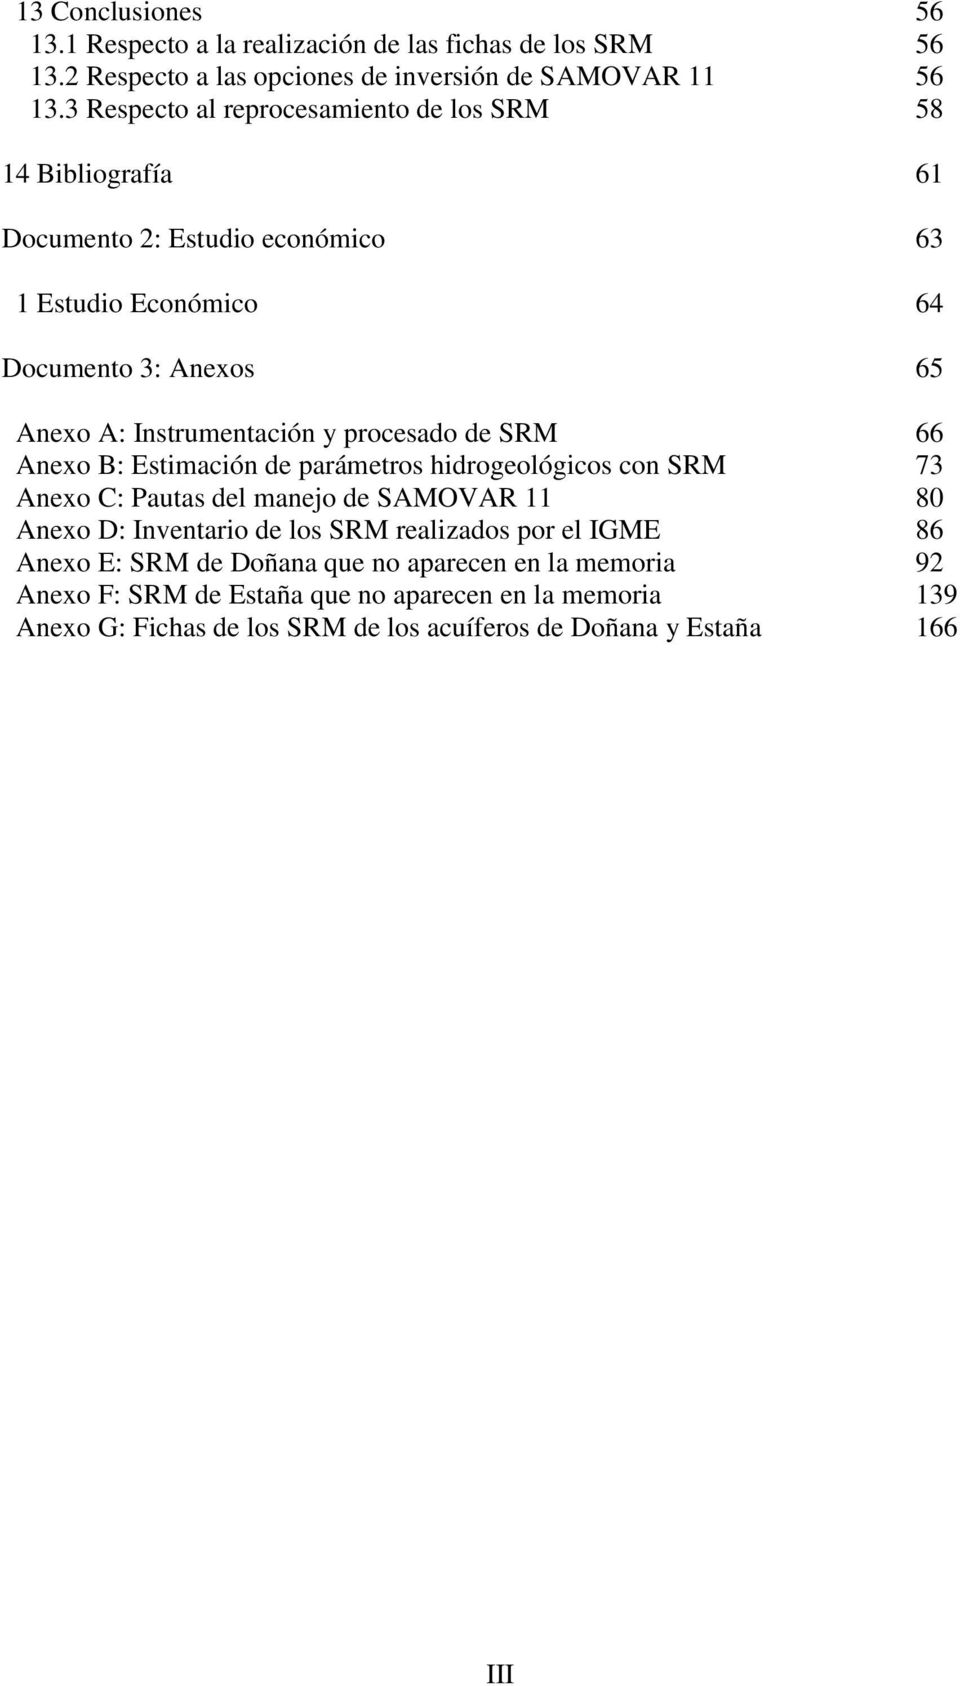 y procesado de SRM 66 Anexo B: Estimación de parámetros hidrogeológicos con SRM 73 Anexo C: Pautas del manejo de SAMOVAR 11 80 Anexo D: Inventario de los SRM realizados